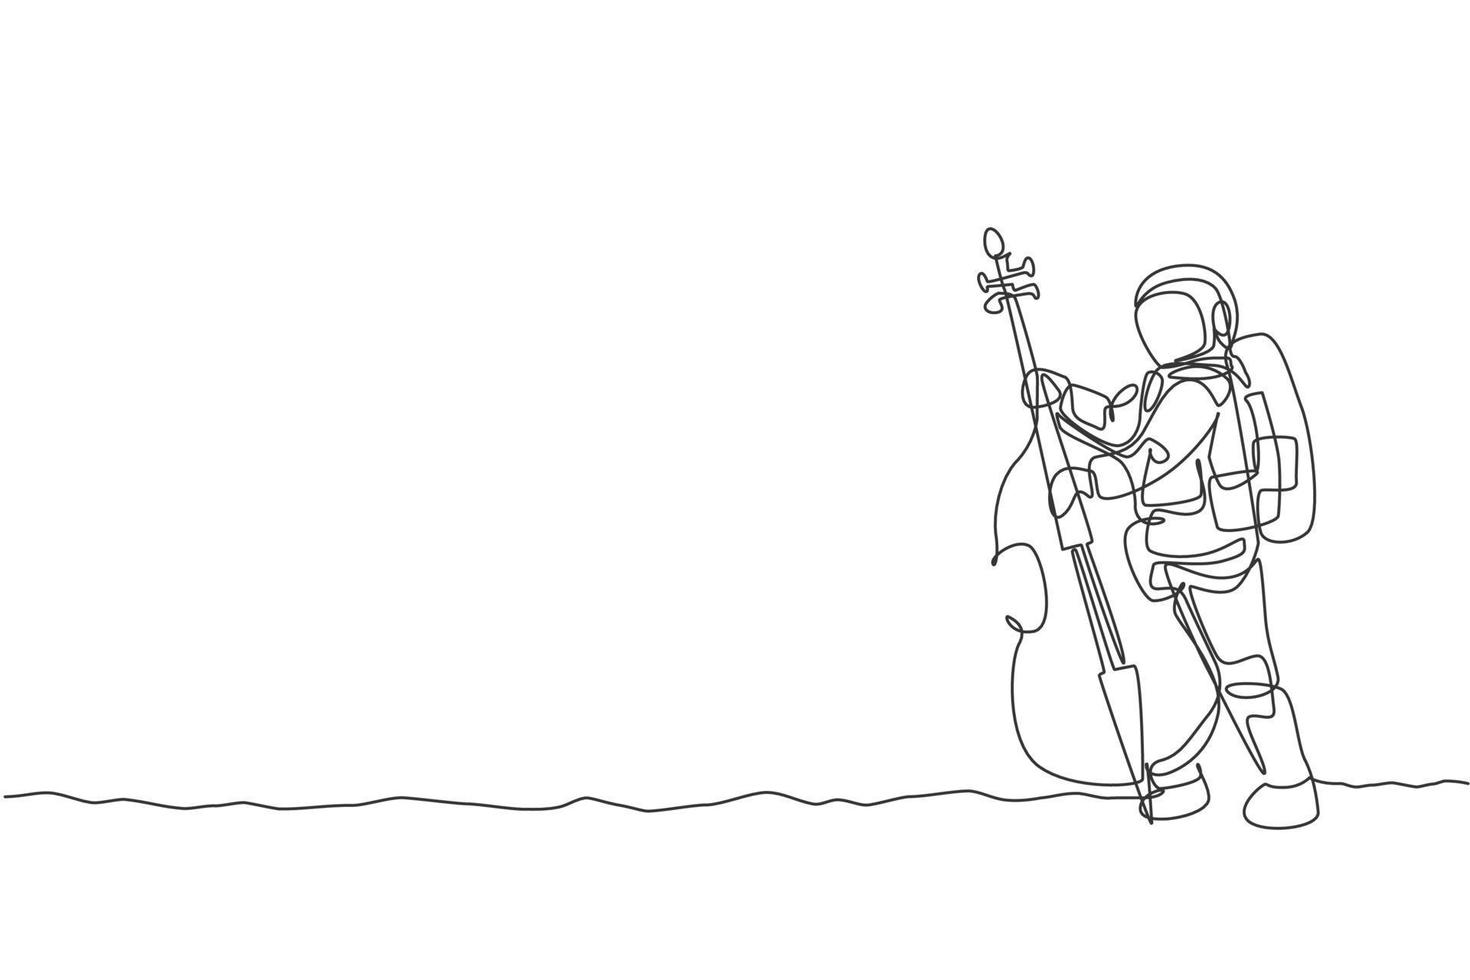 desenho de uma única linha de astronauta violoncelista tocando instrumento musical de violoncelo na ilustração vetorial de superfície da lua. cartaz de concerto de música com conceito de astronauta espacial. design moderno de desenho de linha contínua vetor